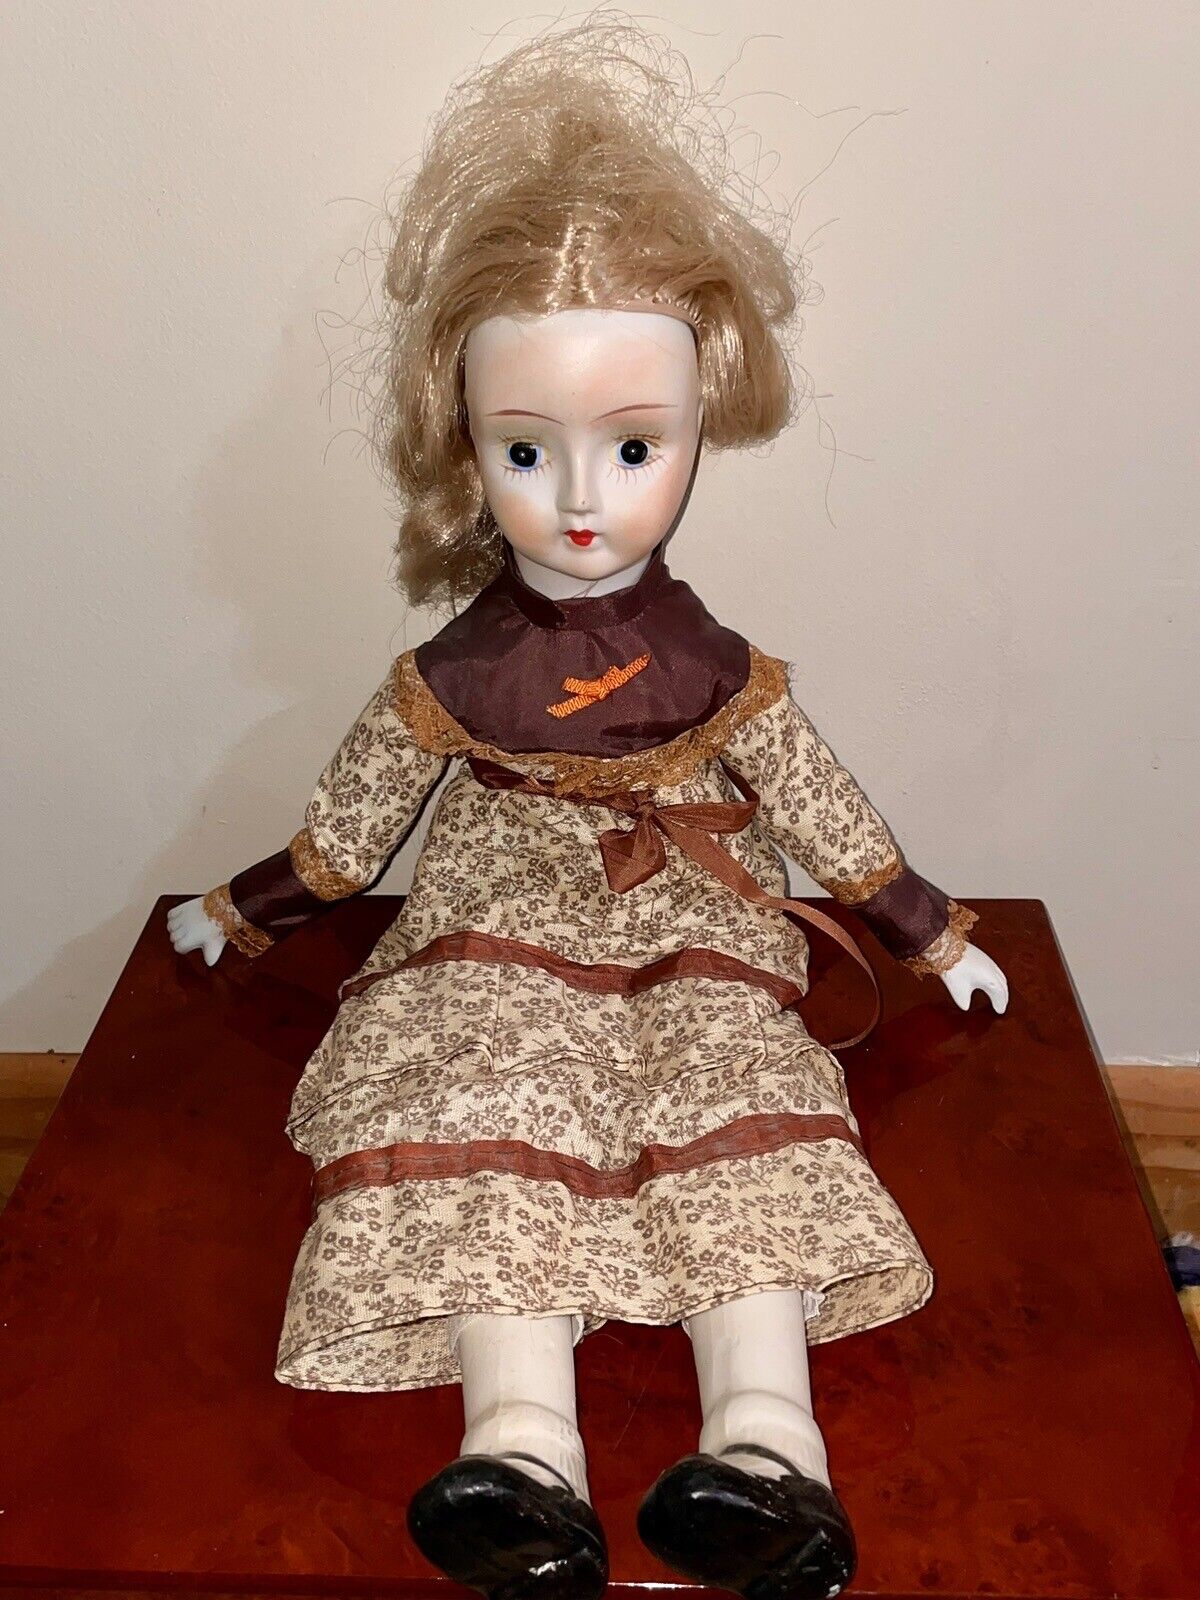 Vintage Large Painted Porcelain Victorian Flower Dress Girl Doll Figurine